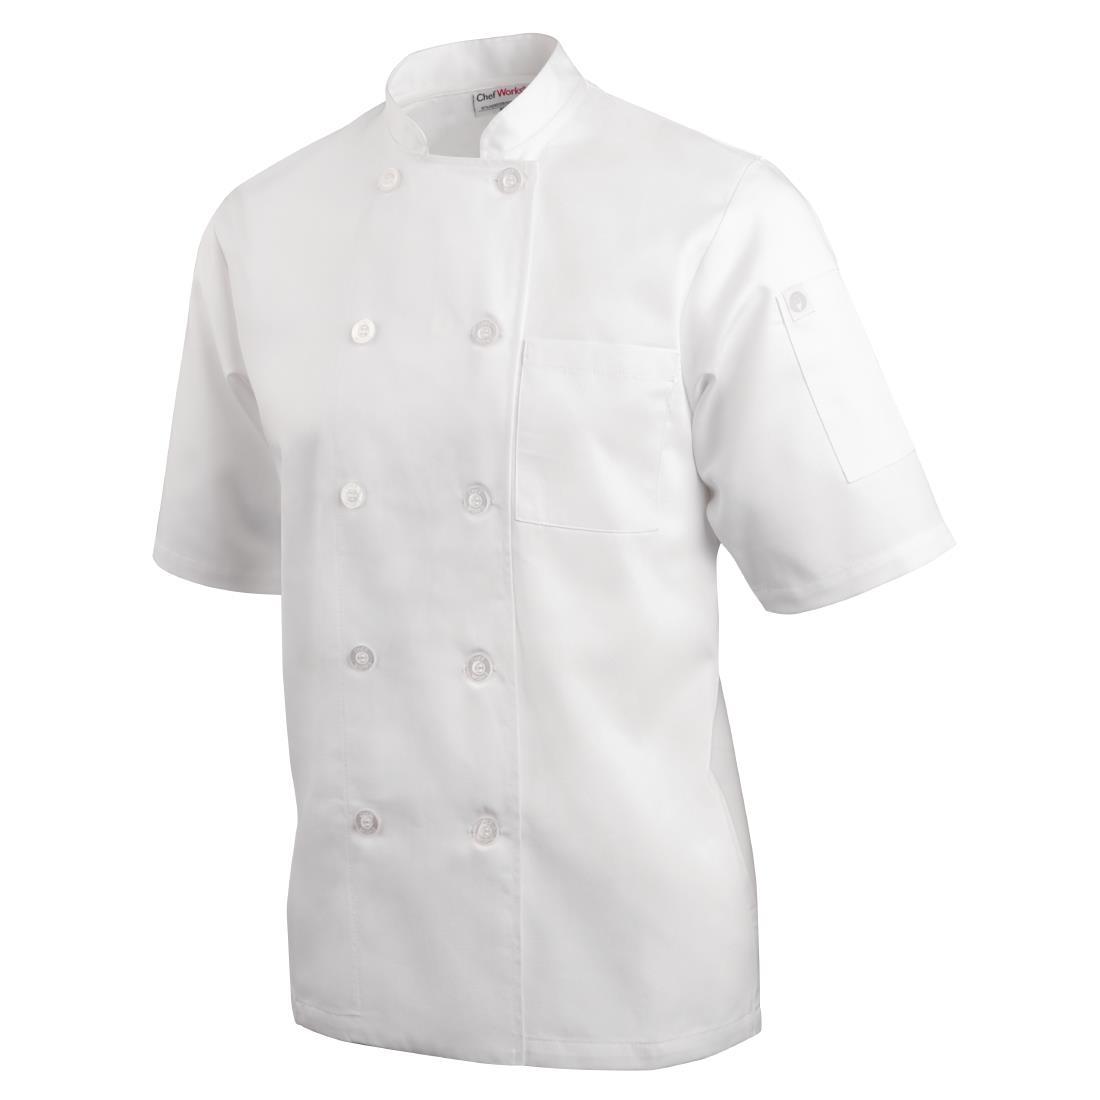 Chefs Works Unisex Volnay Chefs Jacket Short Sleeve White 2XL - A372-XXL  - 2